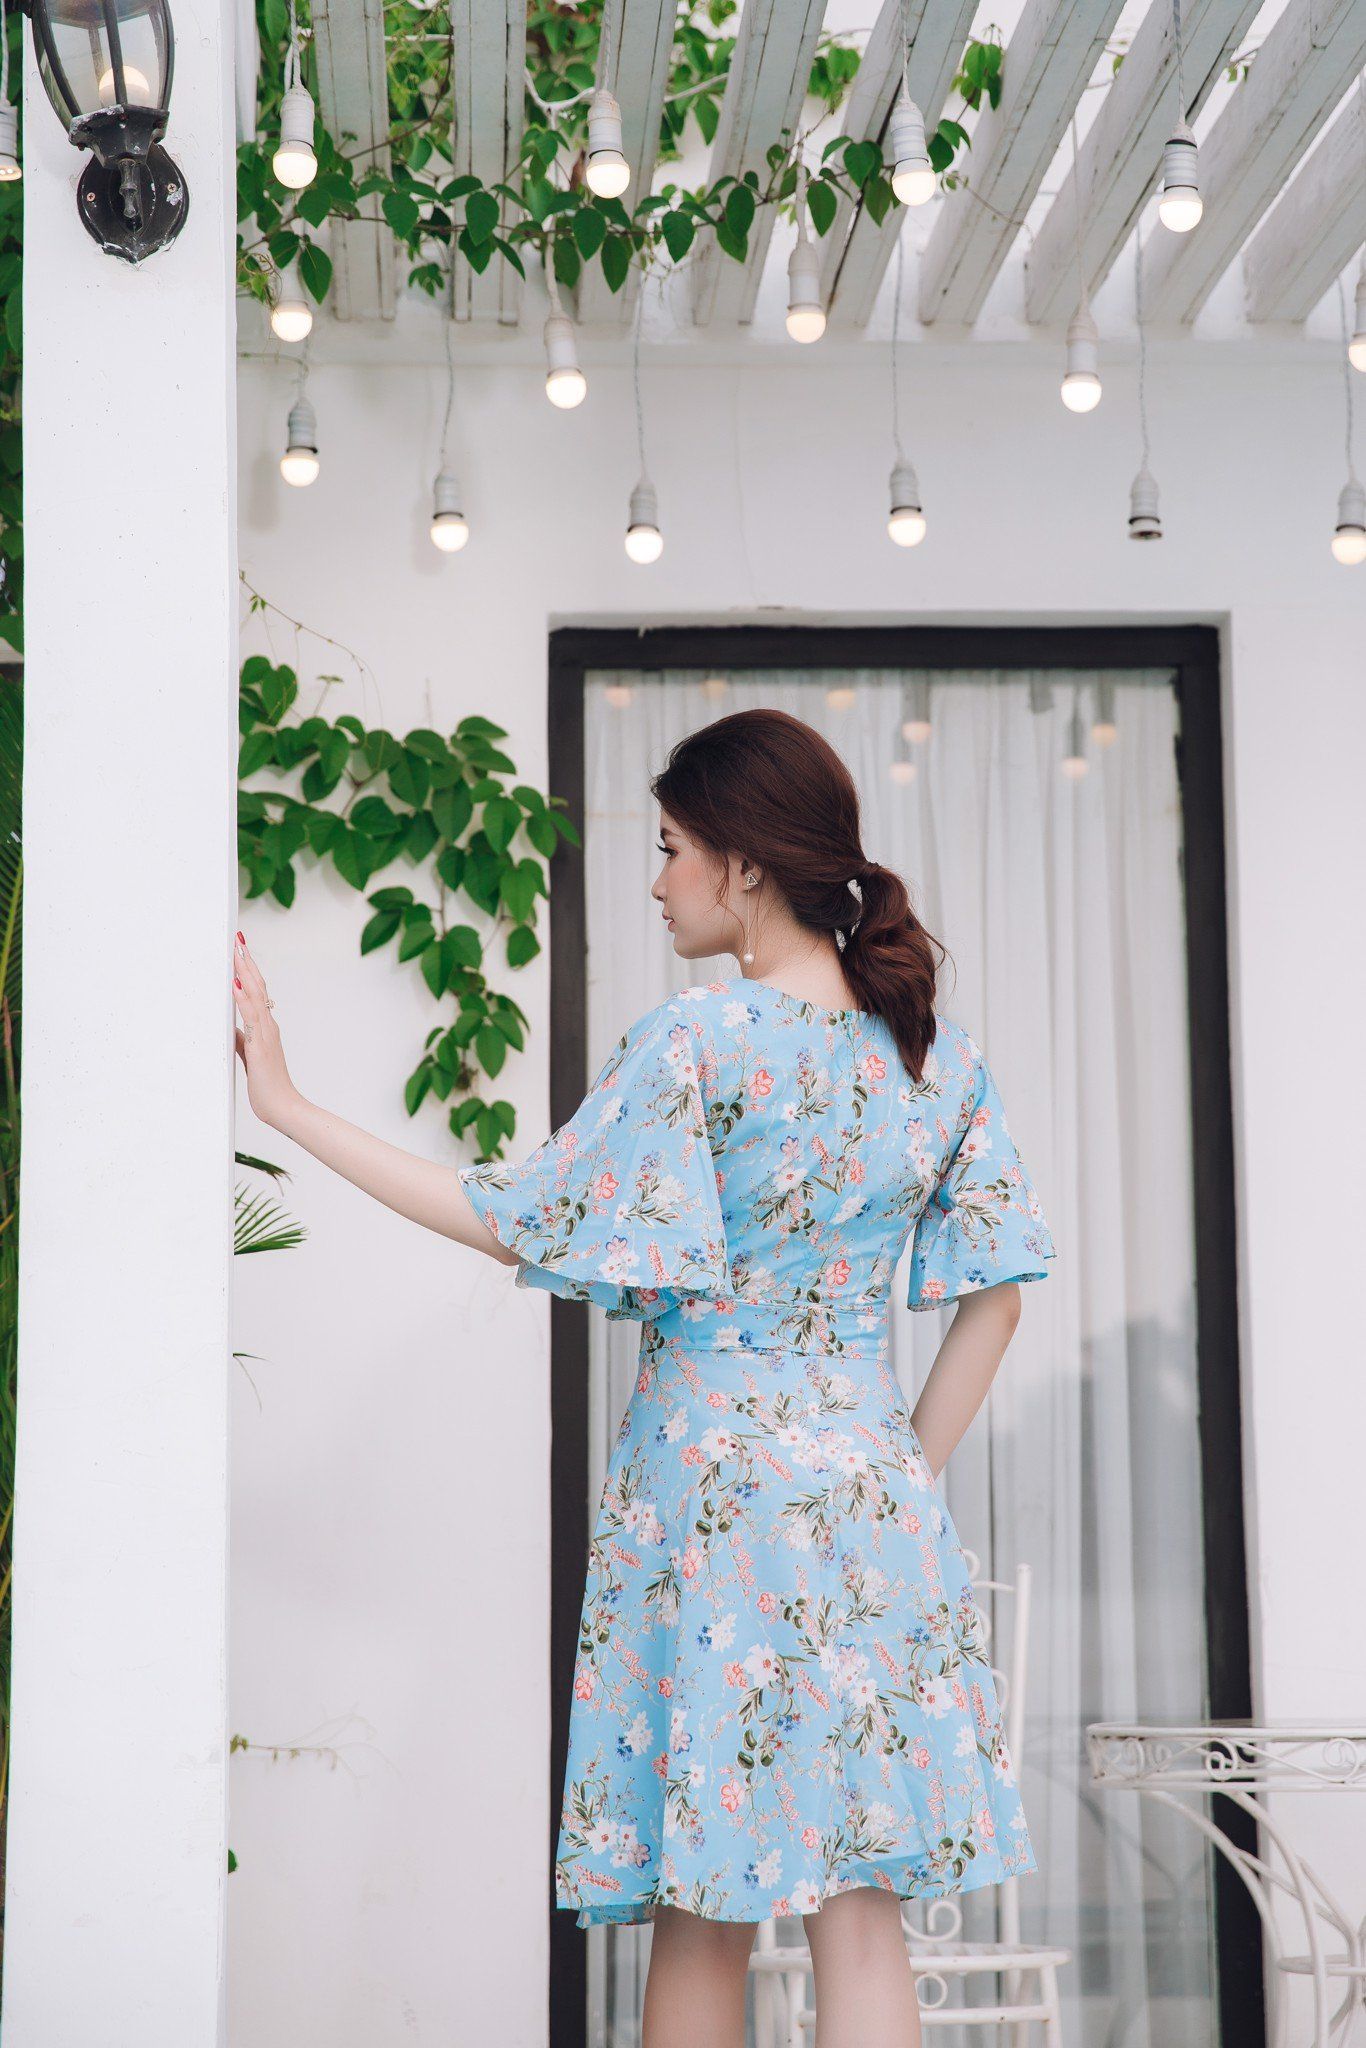 Đầm dạo phố Mia Selena thiết kế xòe dễ thương (Hoa)